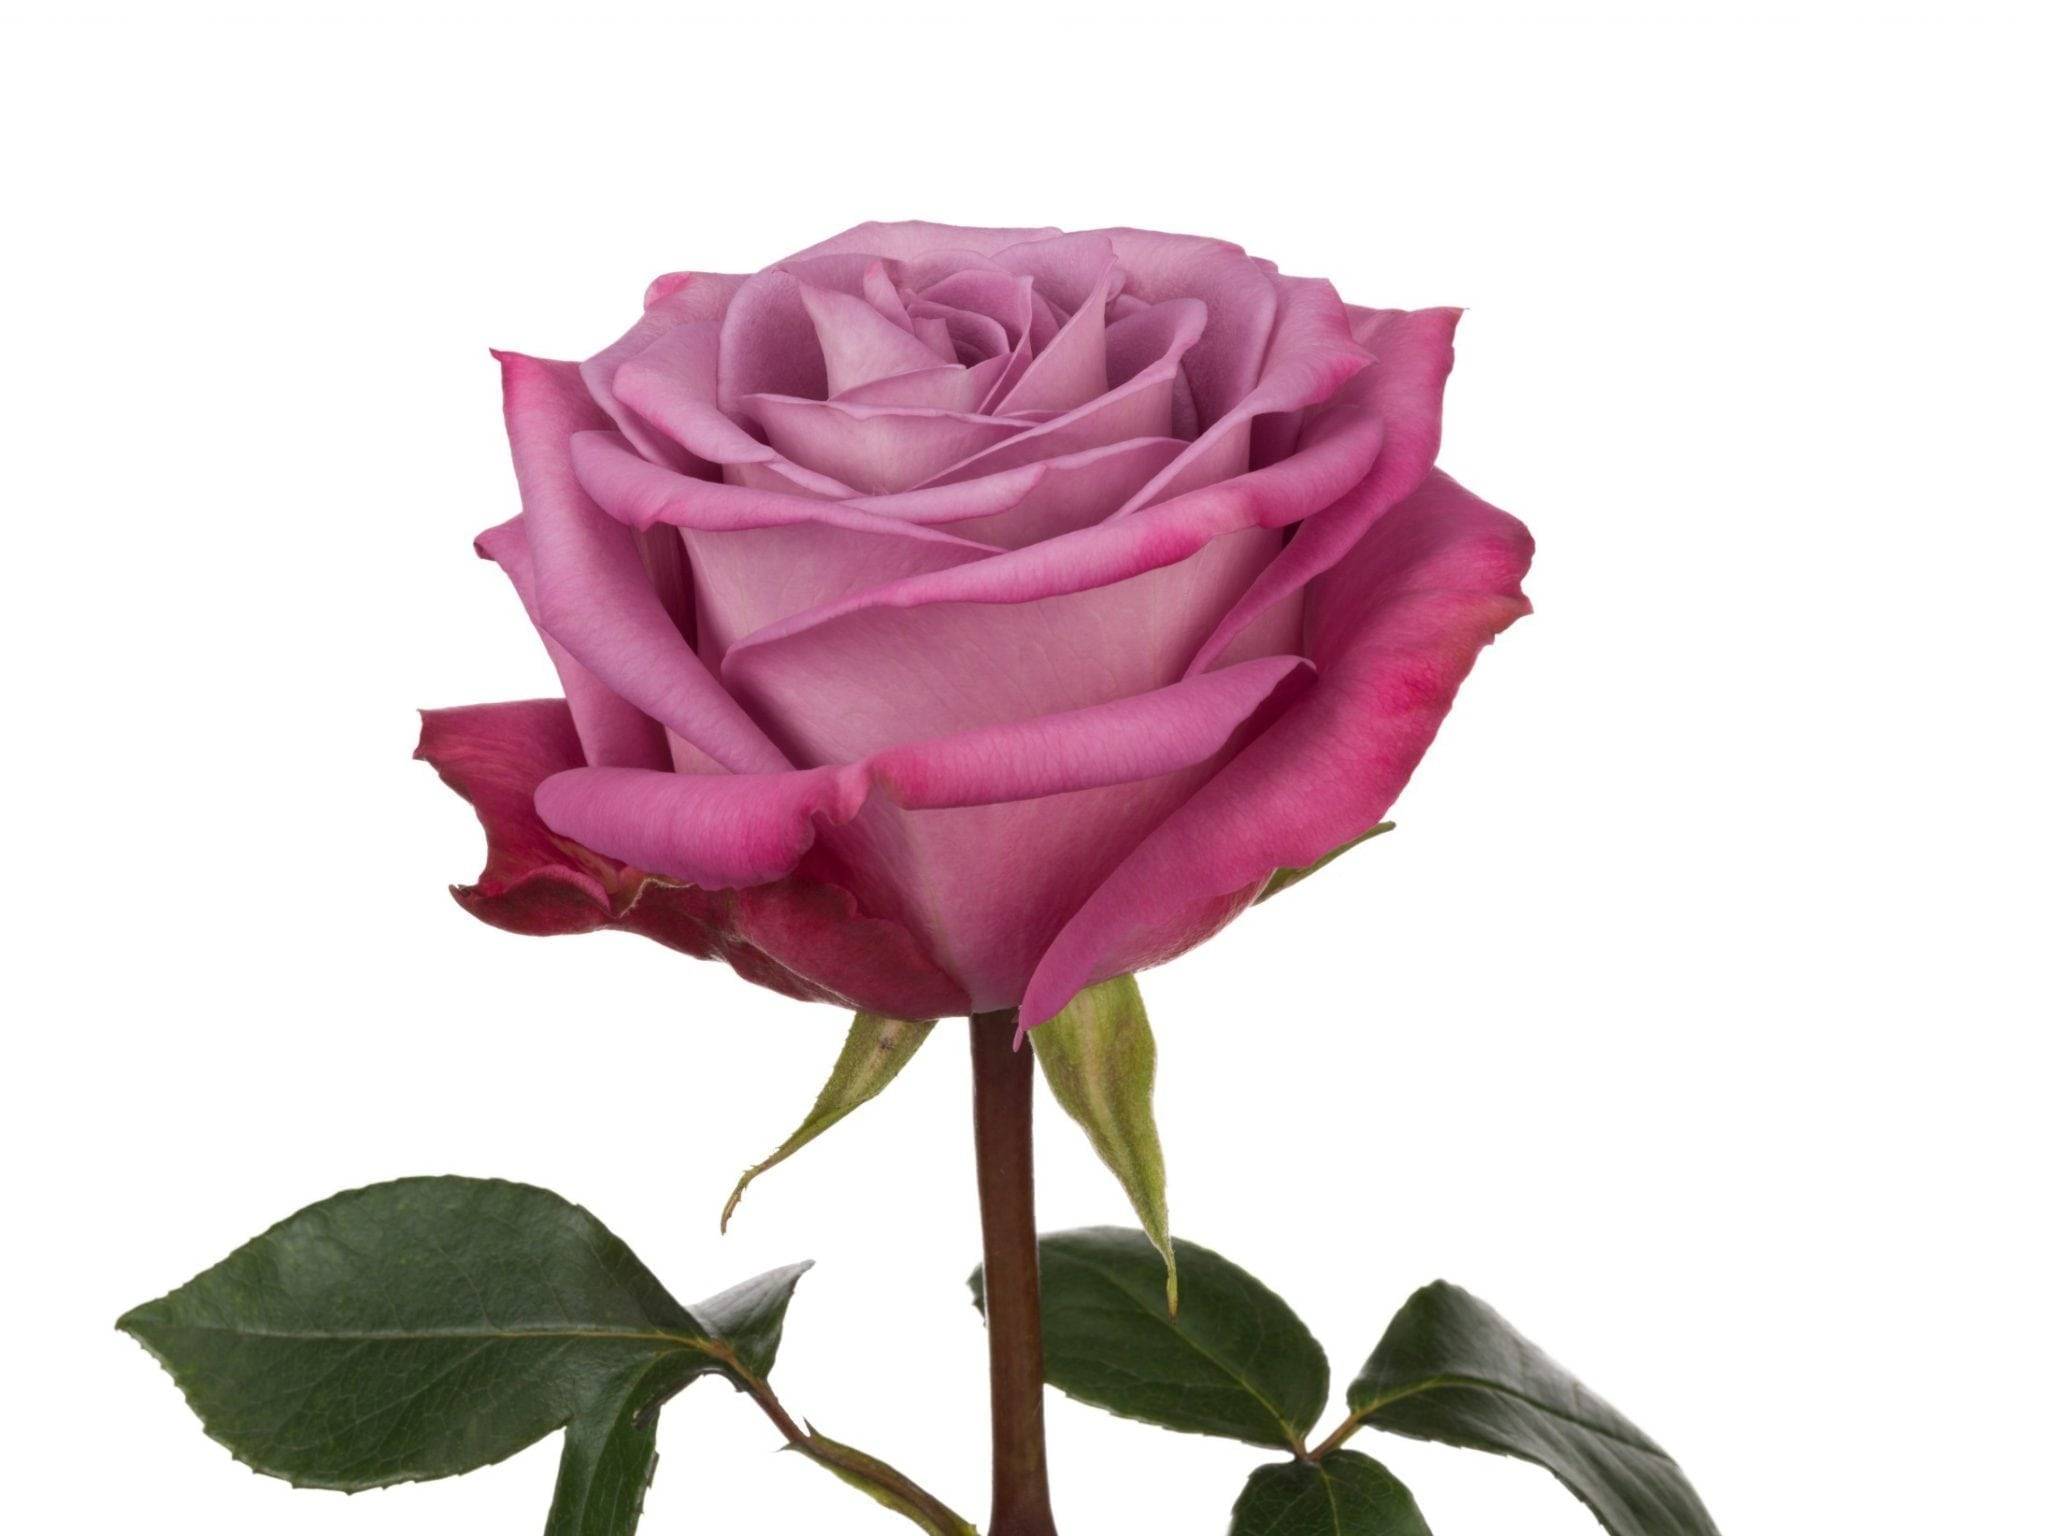 Лучшие сорта роз по цветам | о розе